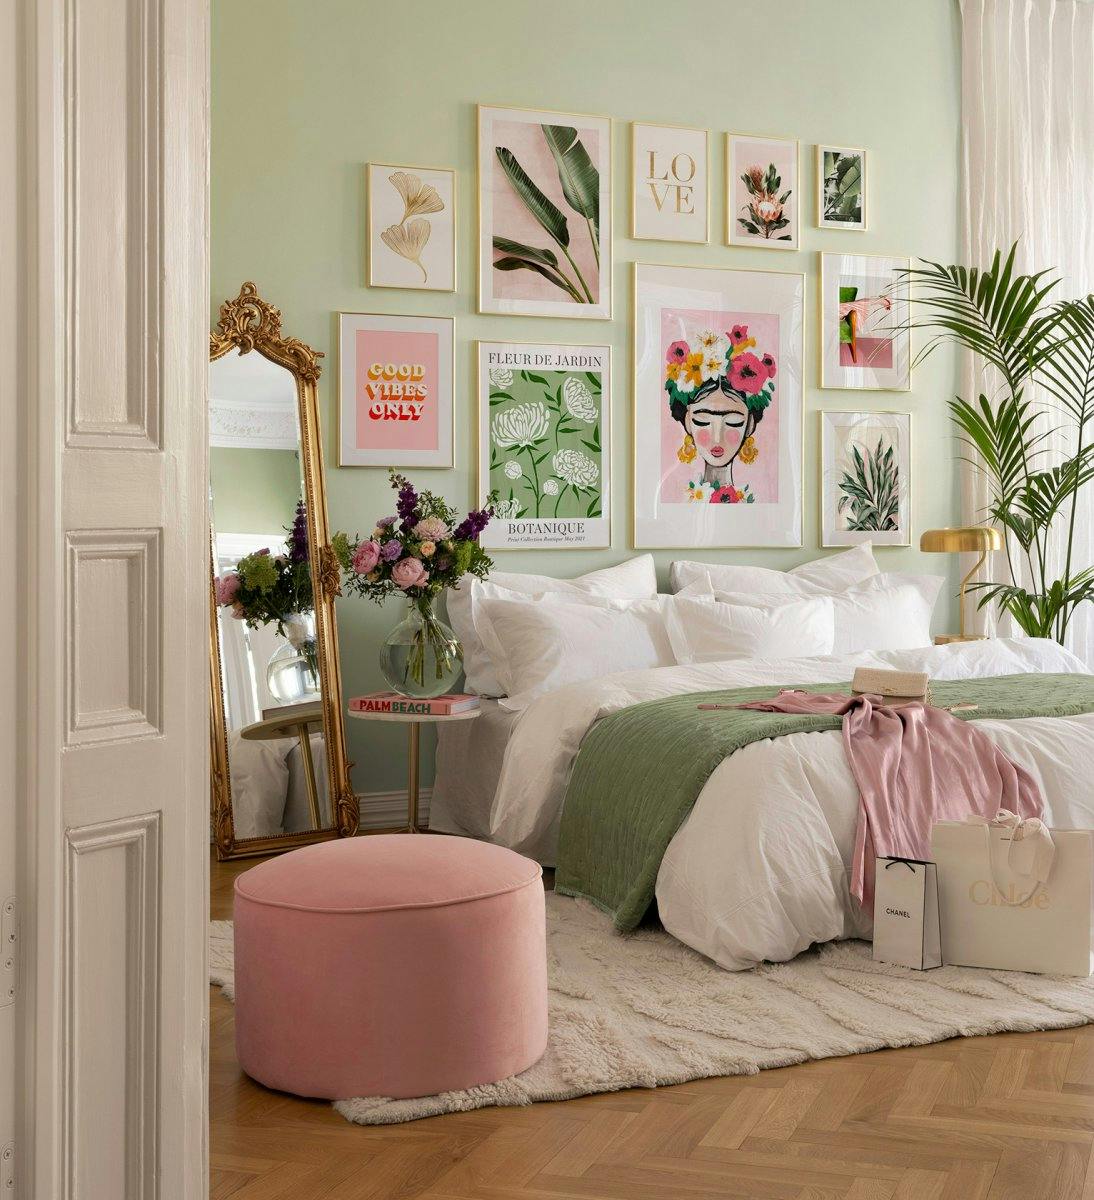 Rózsaszín és zöld galéria fal lányos és botanikai témával, arany keretekkel a hálószobába